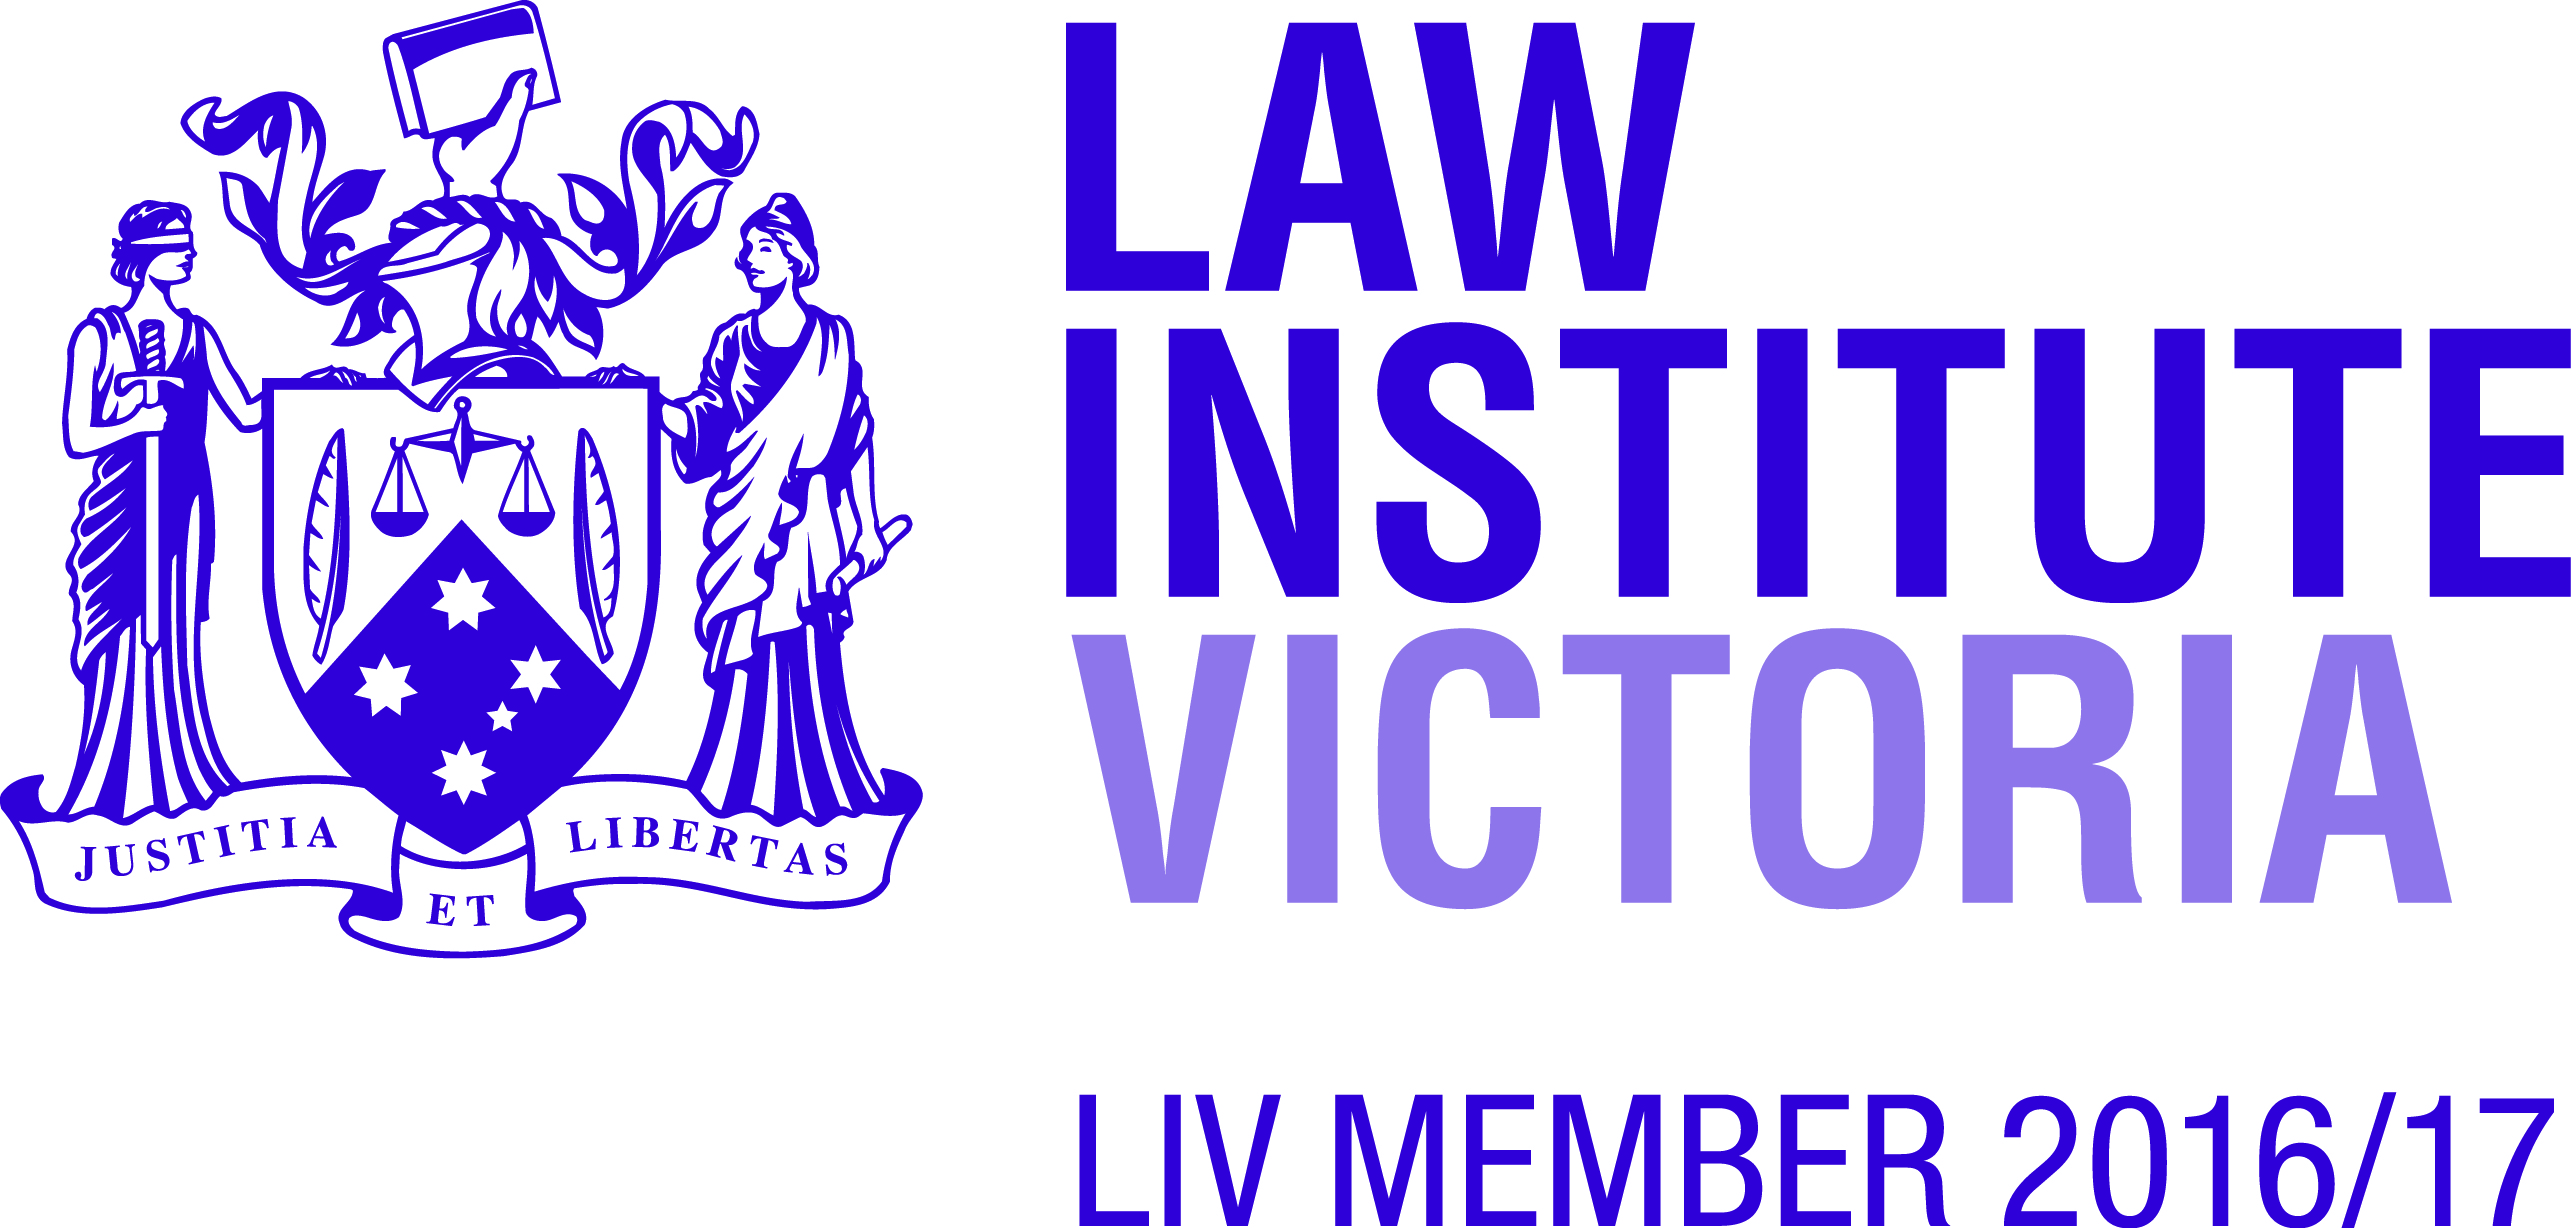 Law Institute Victoria Member